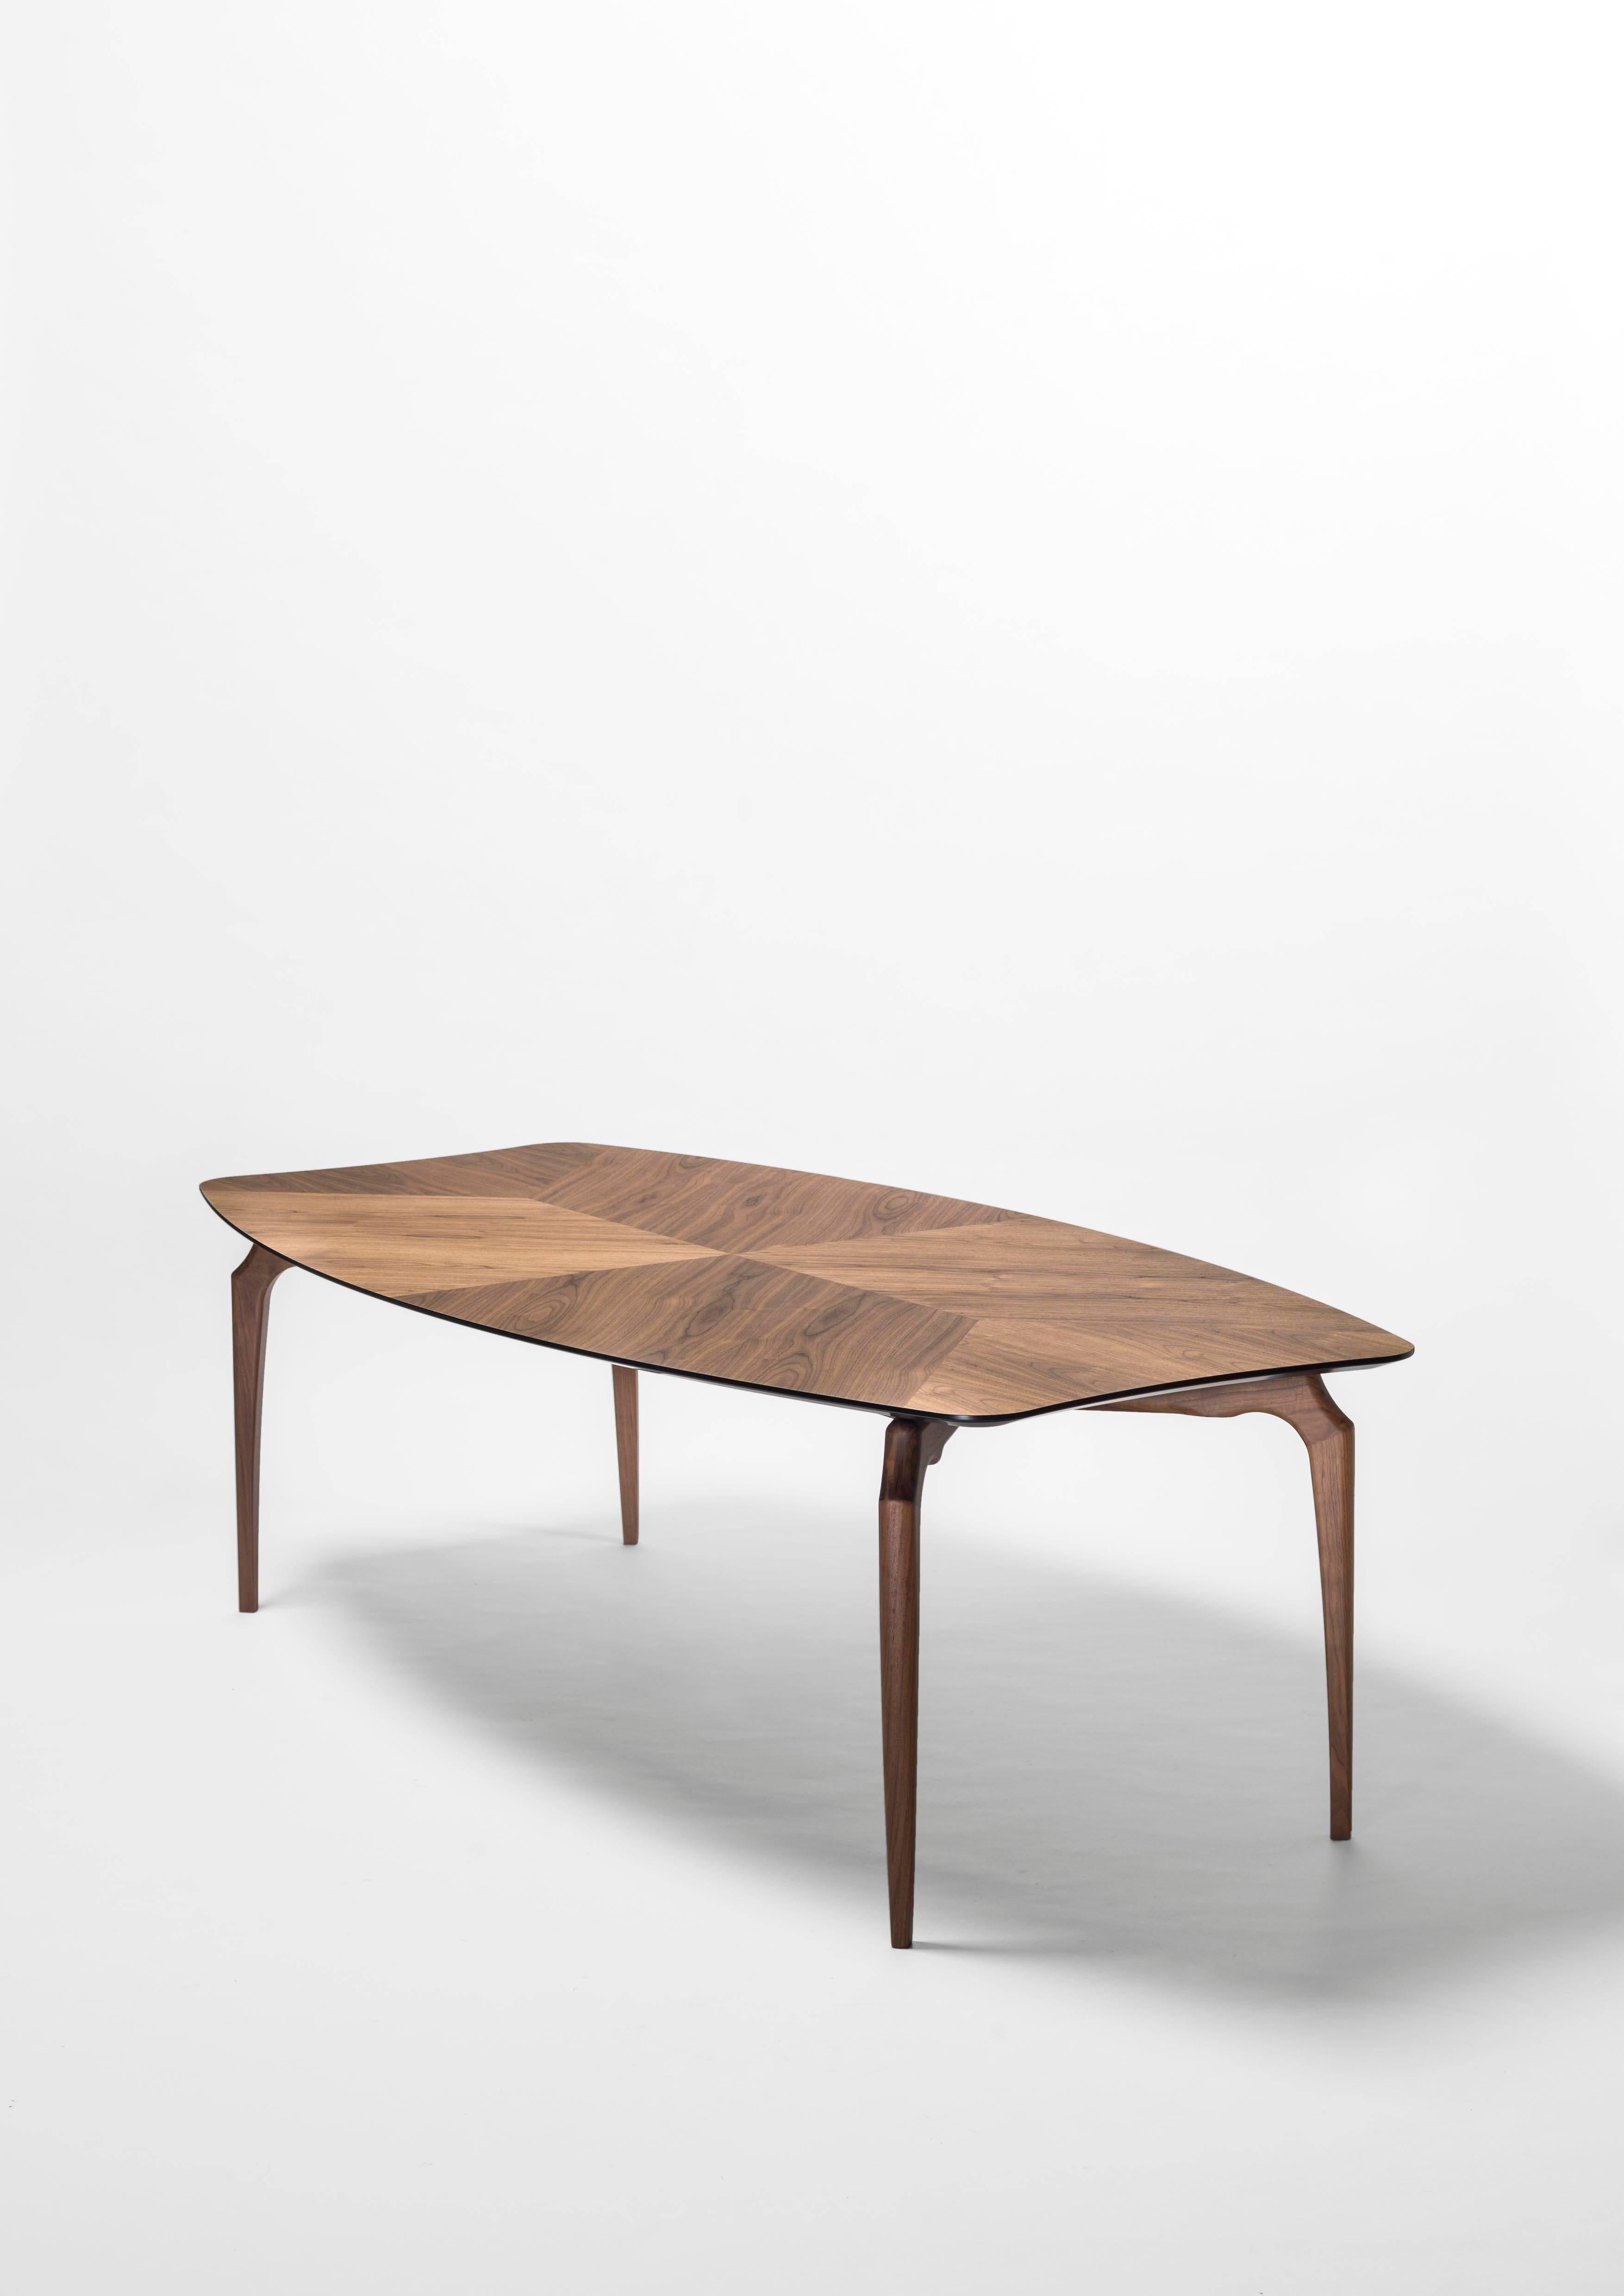 Table Gaulino conçue par Oscar Tusquets et fabriquée par BD Barcelona Design, circa 2010.

Oscar Tusquets, architecte, artiste et écrivain, a presque tout conçu au cours de sa longue carrière. En particulier, de nombreuses chaises, dont certaines